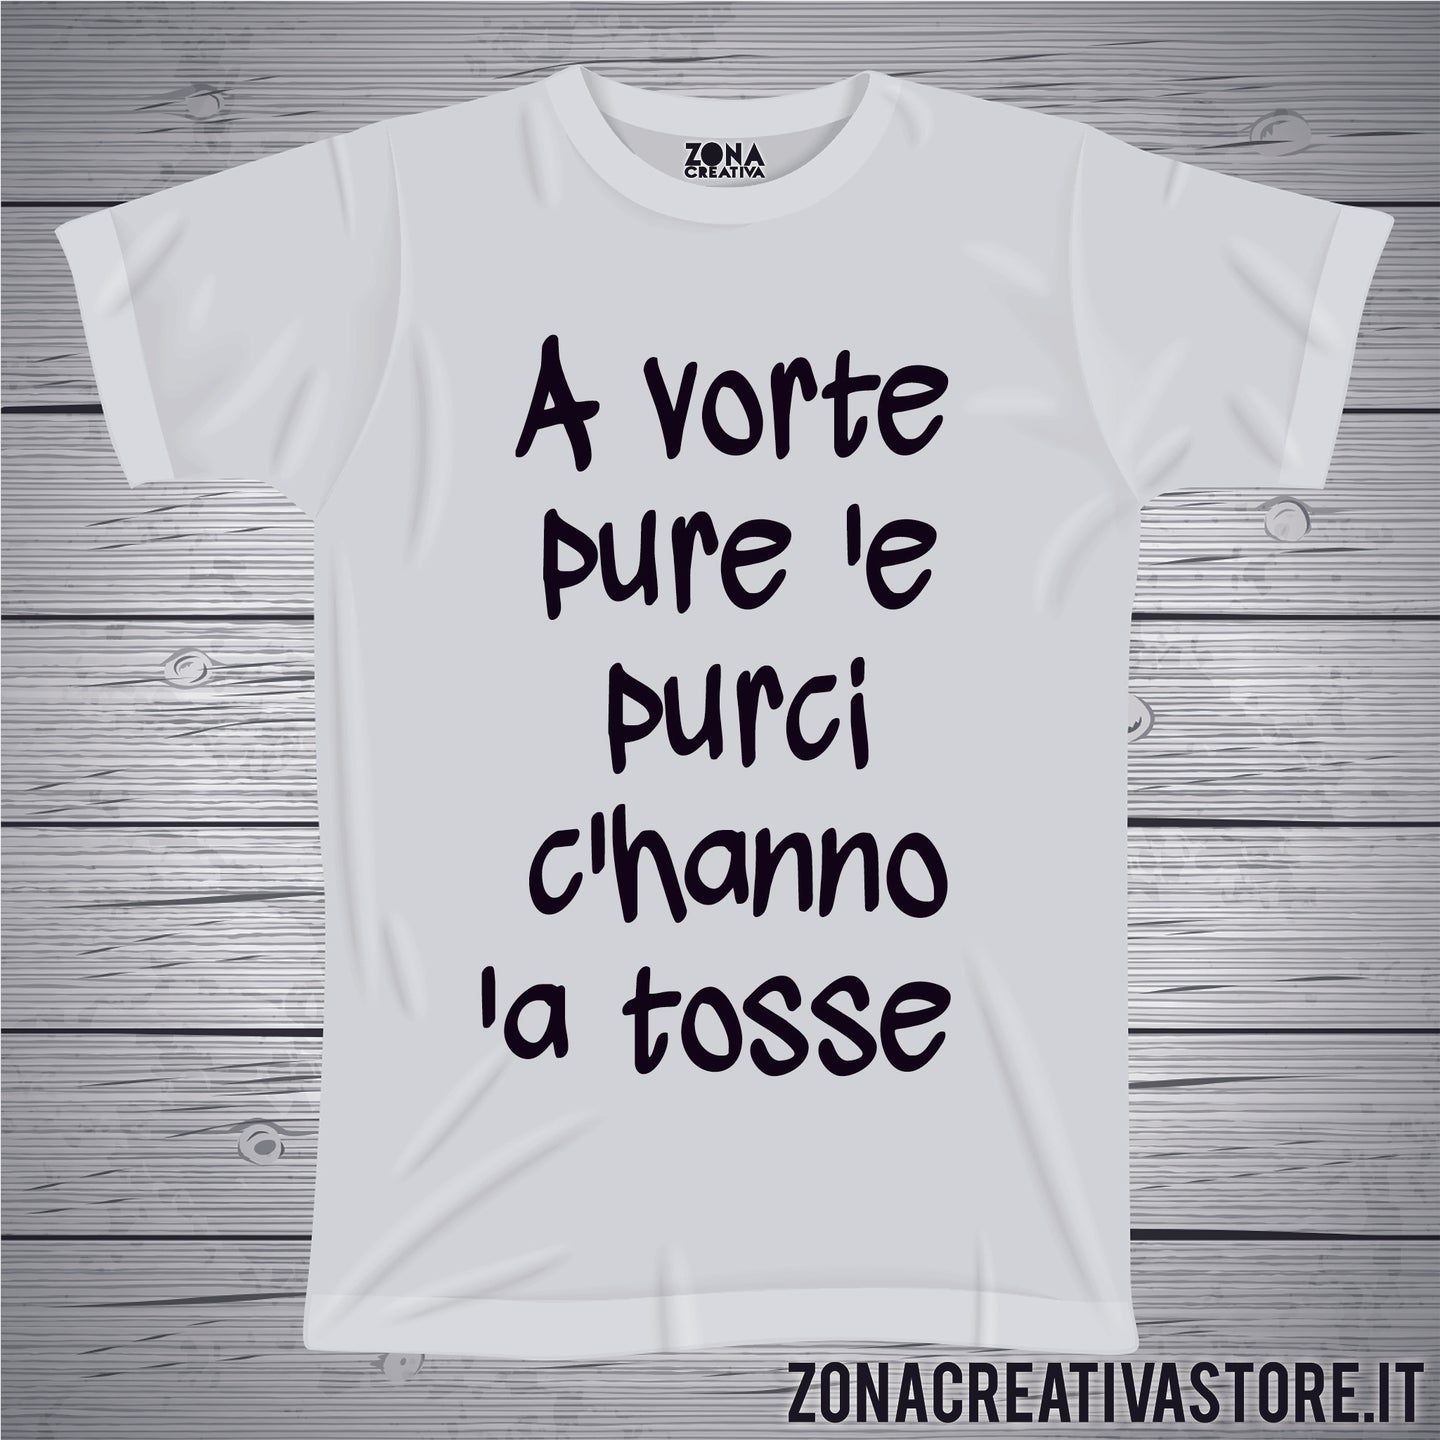 T-shirt divertente con frase in dialetto romano A VORTE PURE 'E  PURCI C'HANNO 'A TOSSE